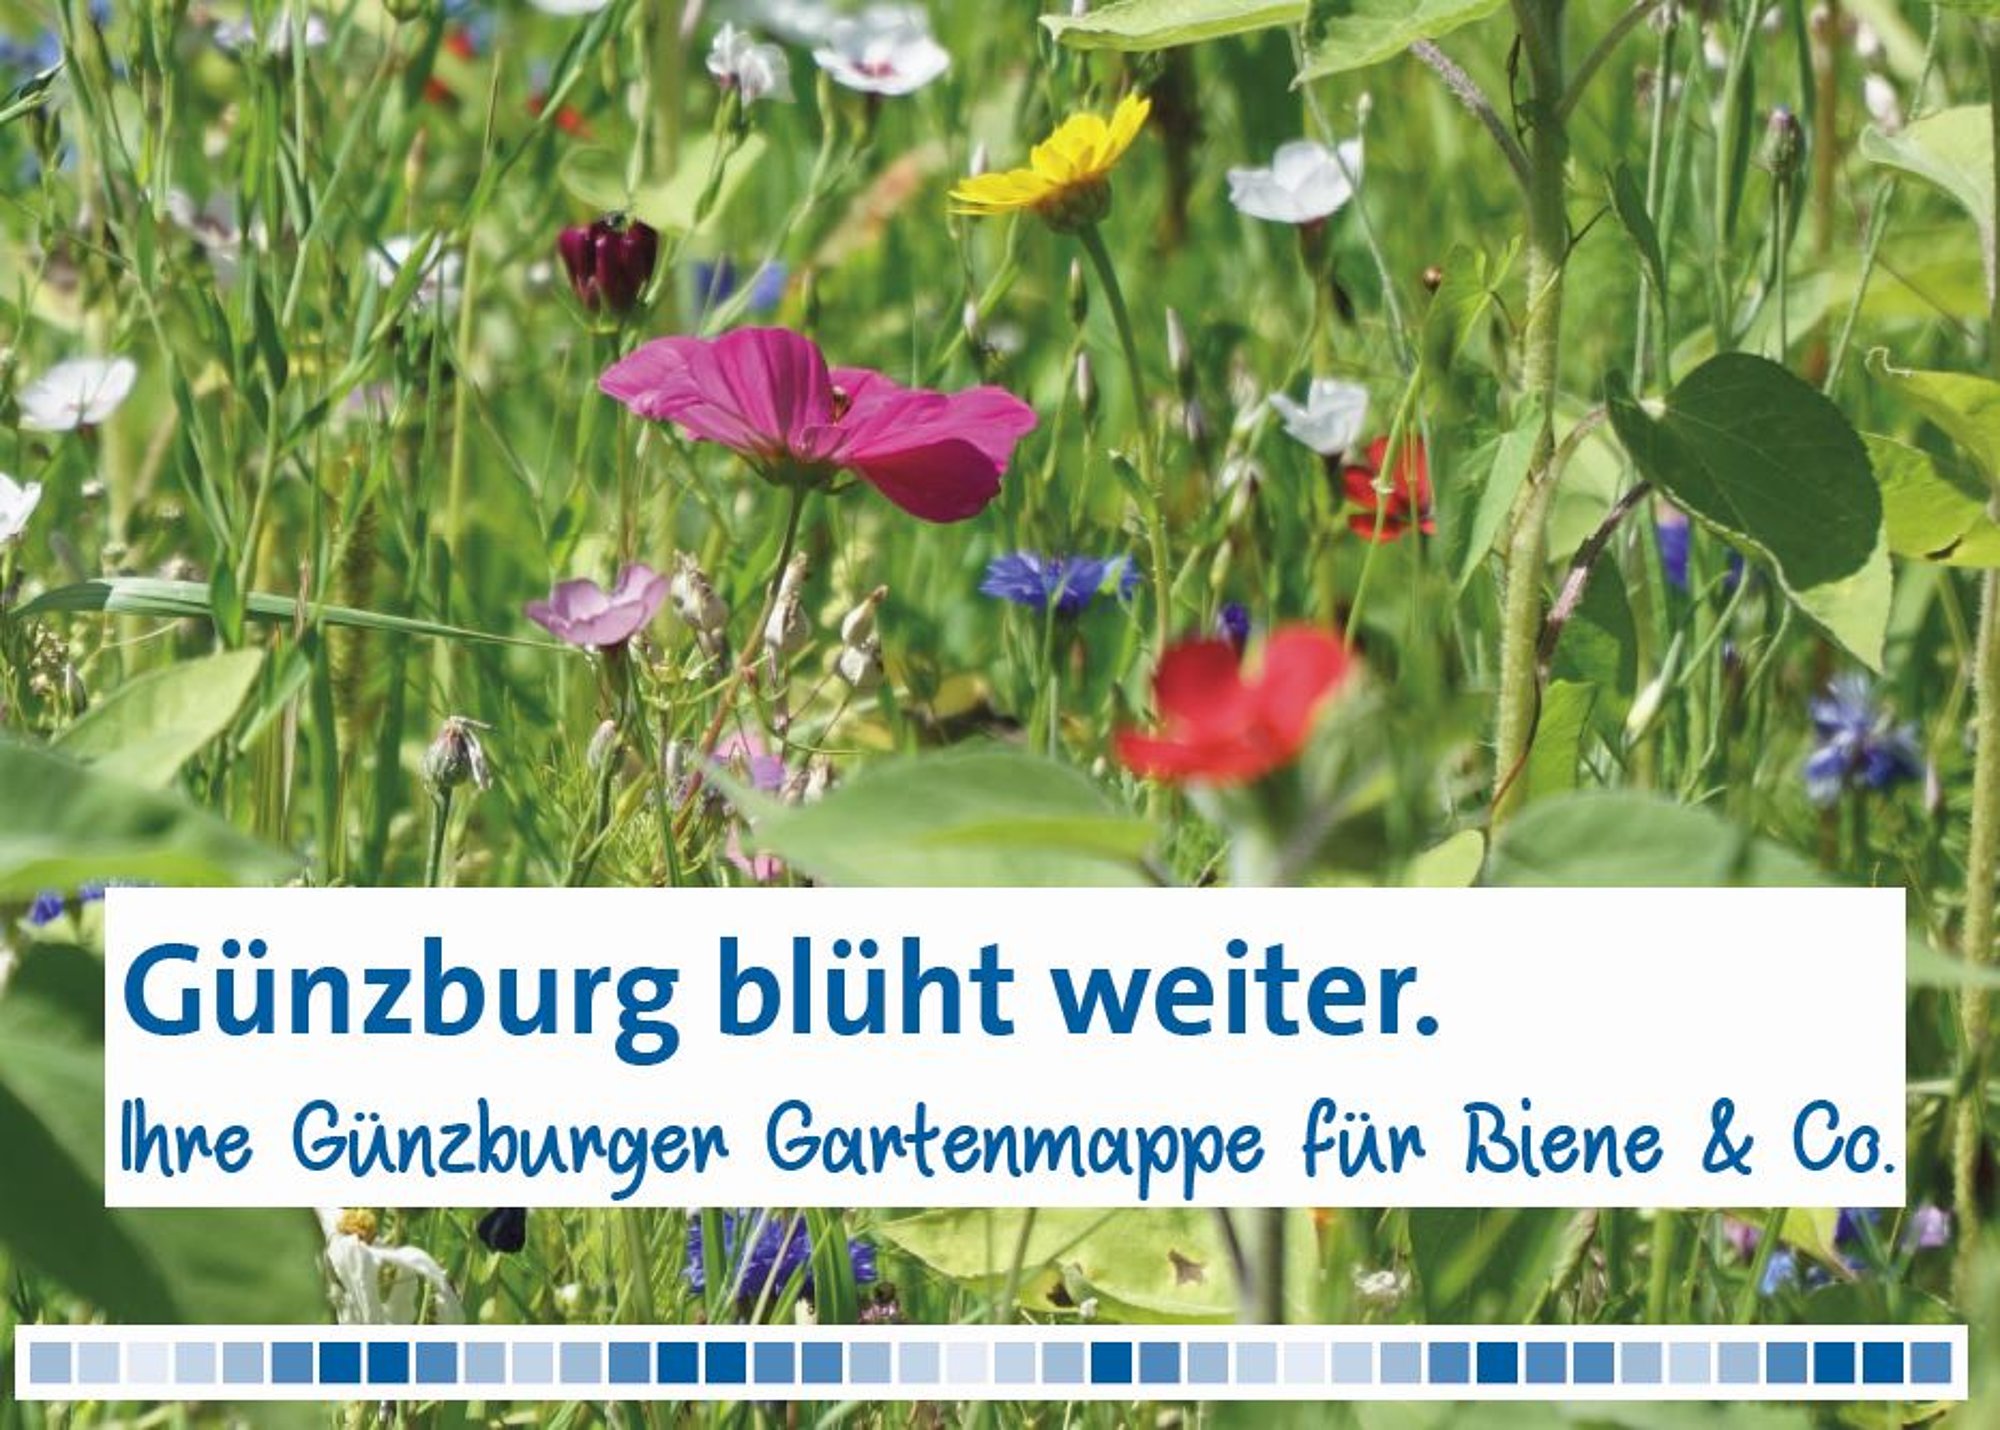 Tipps zu Pflanzen für Insekten und Vögel enthält die kostenlose Gartenmappe der Stadt Günzburg. Grafik: Julia Ehrlich/ Stadt Günzburg